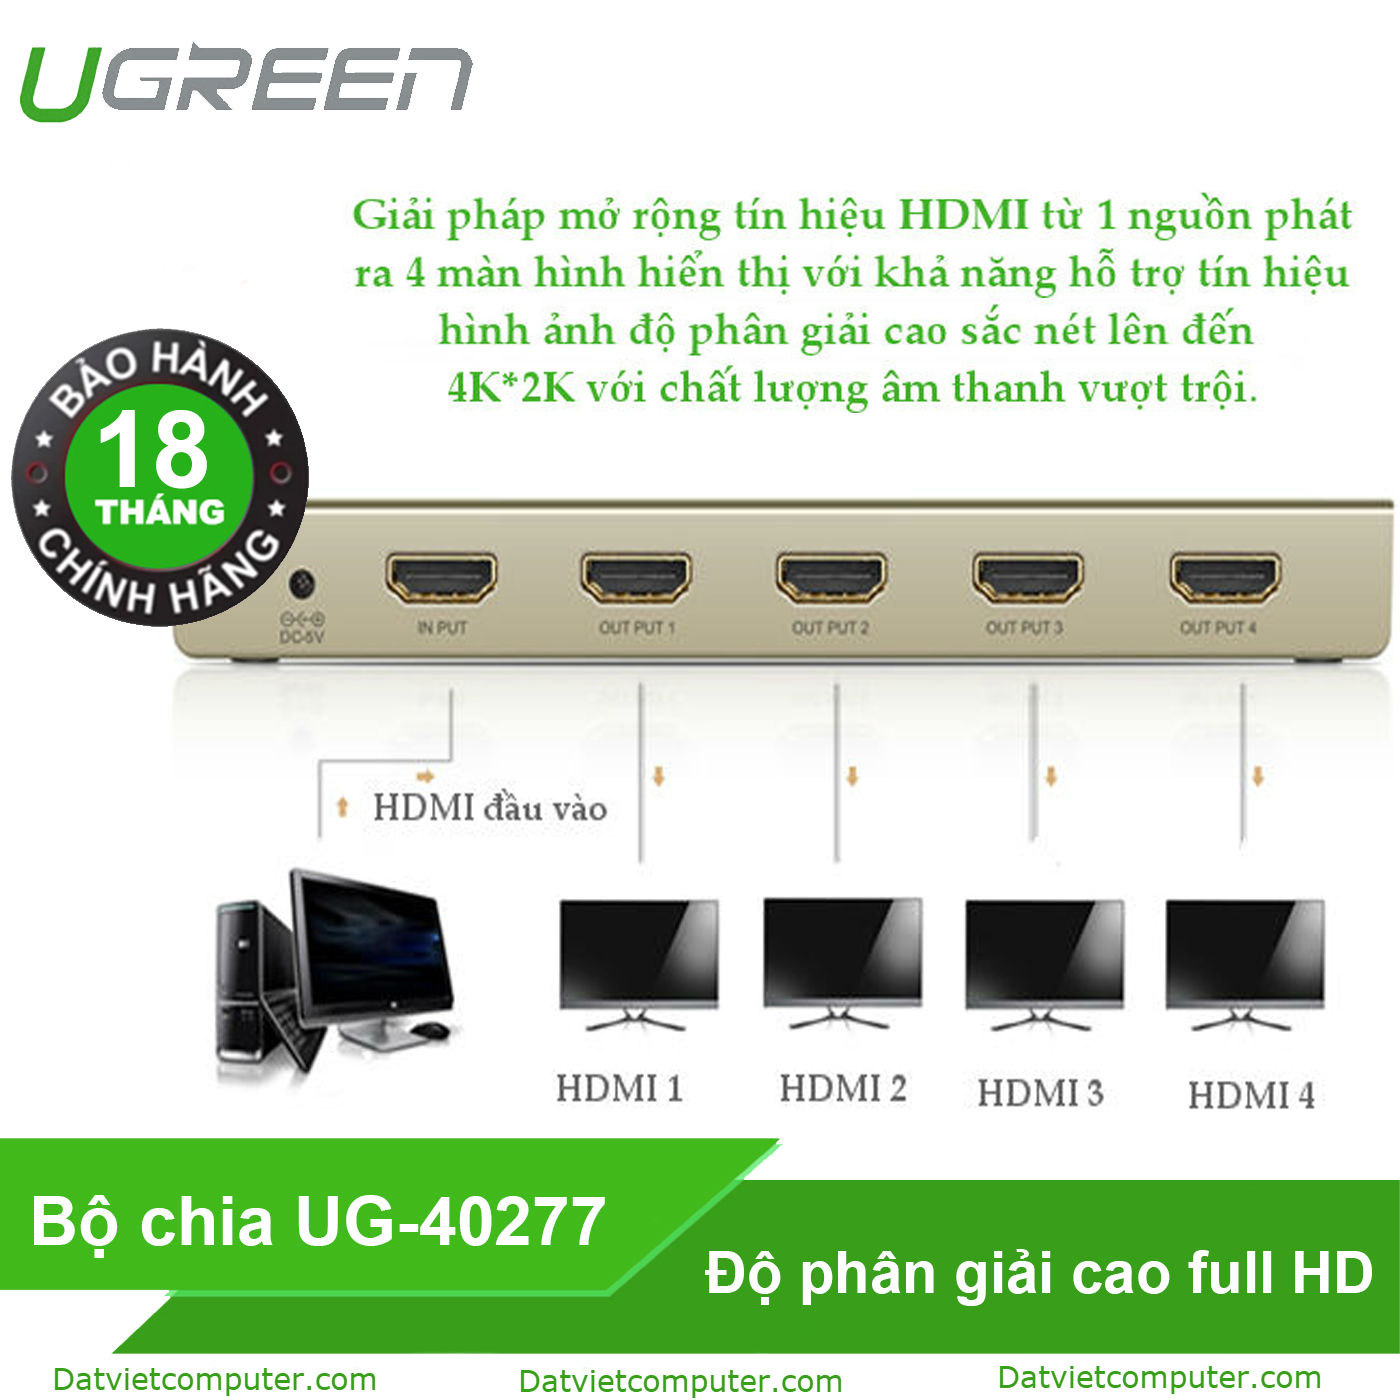 Bộ chia HDMI Ugreen (Model: UG-40277)